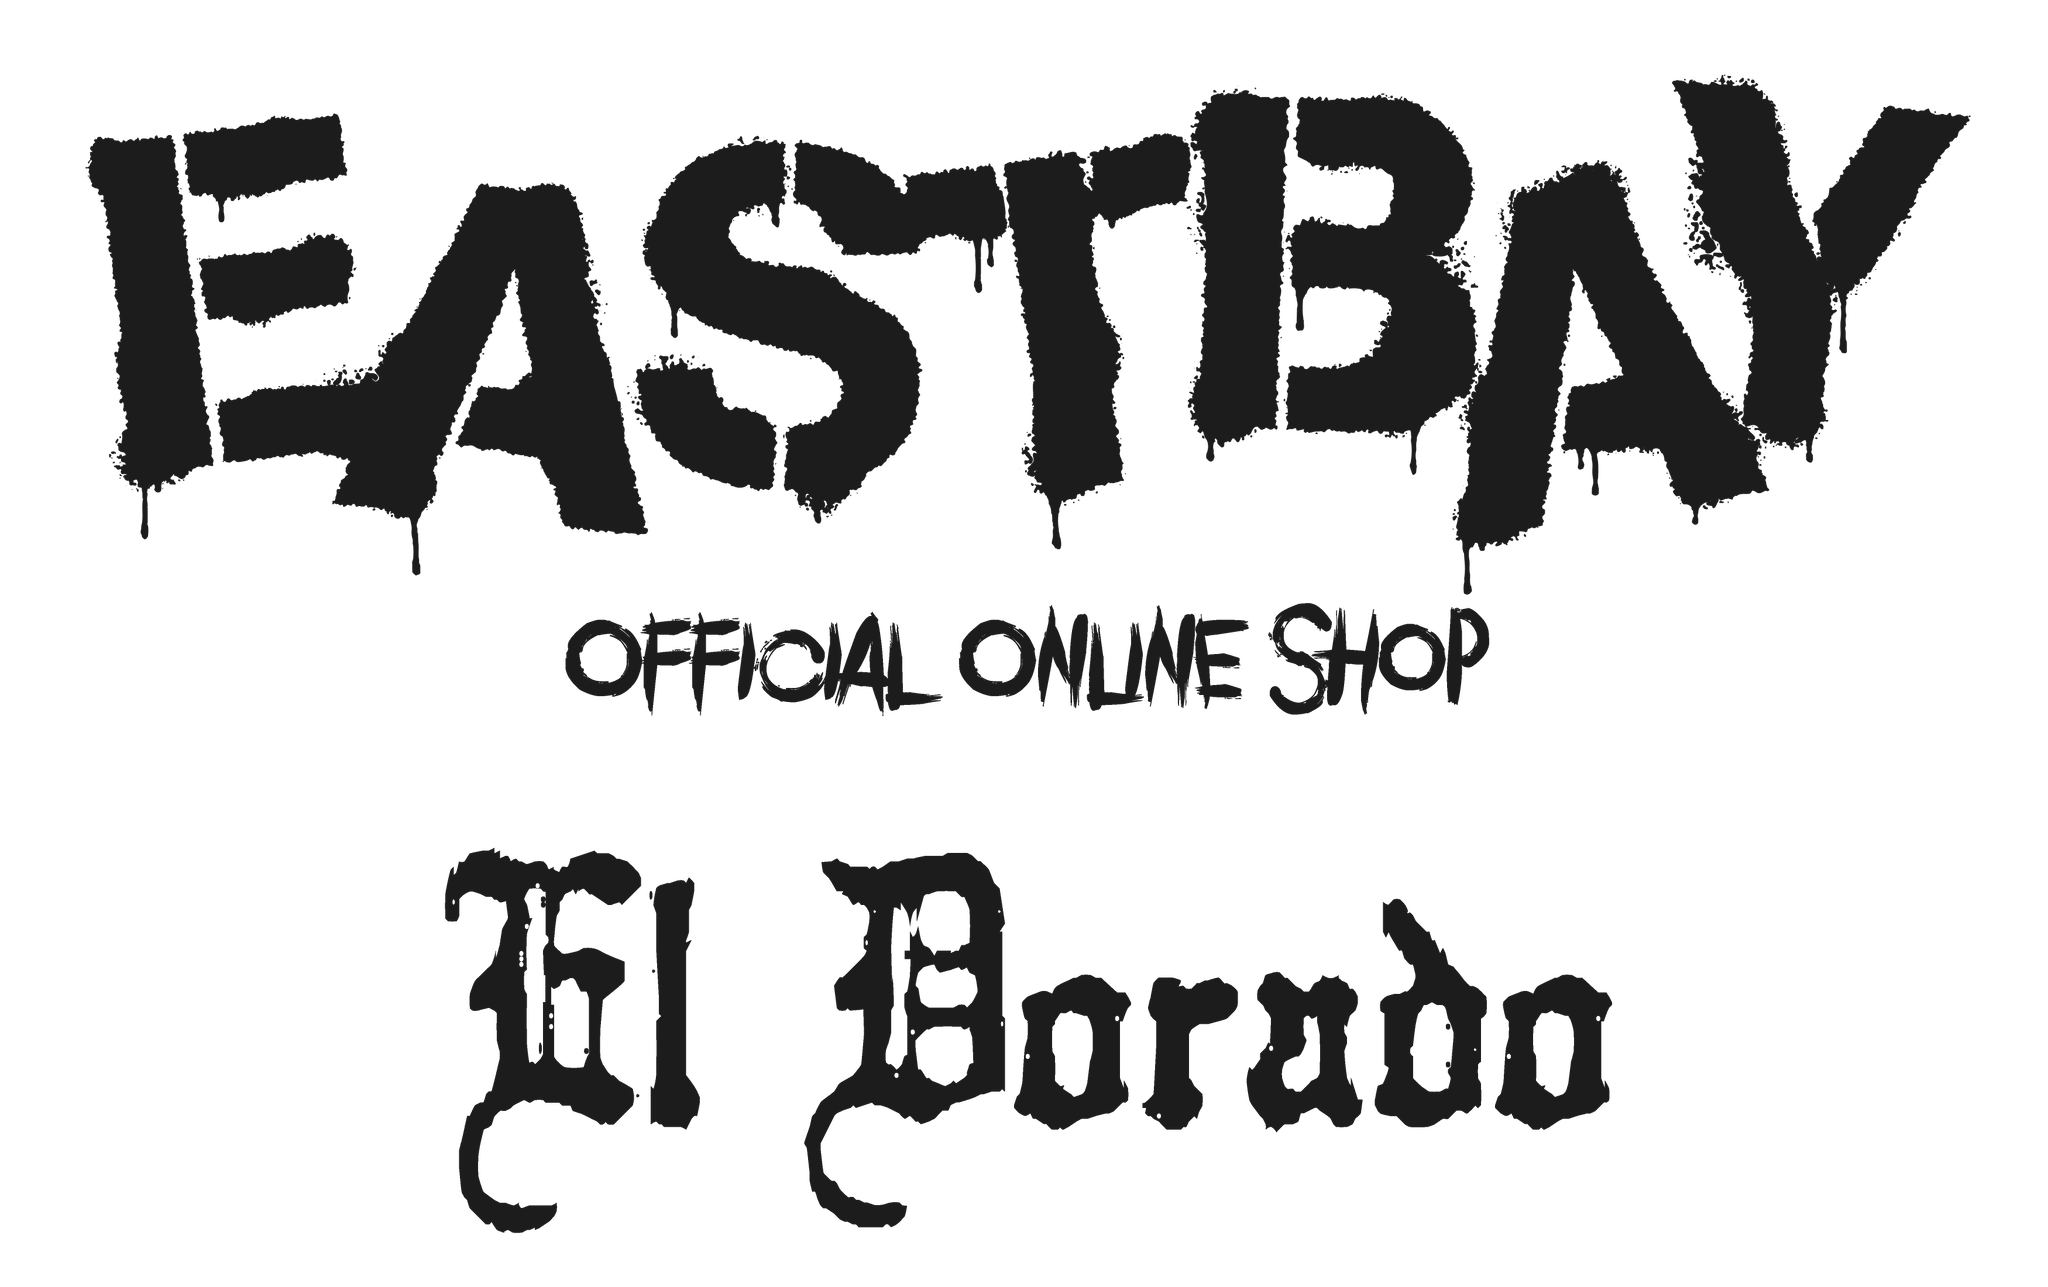 EASTBAY Official Online Shop - El Dorado